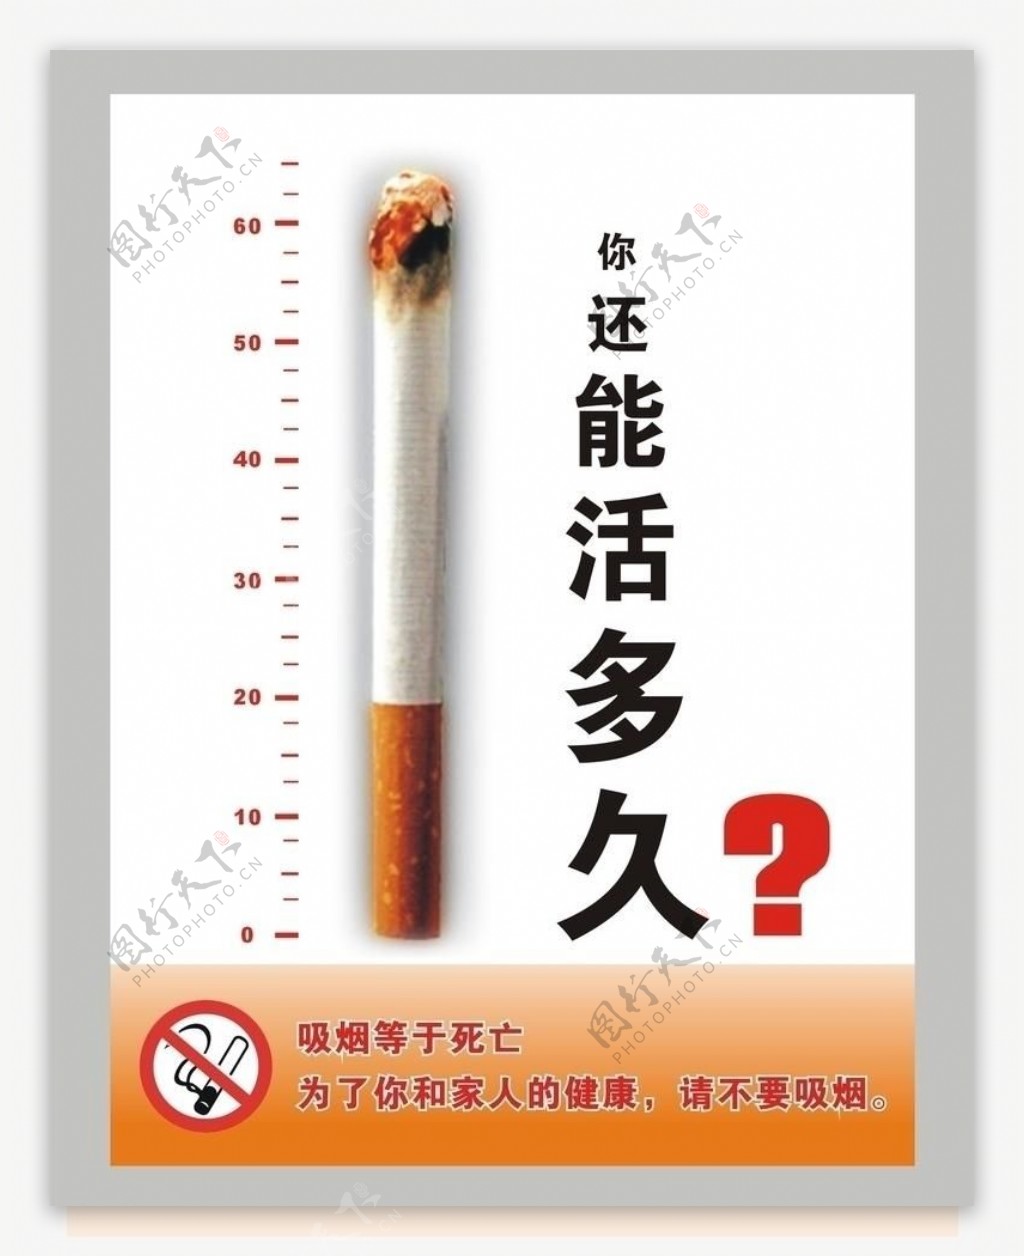 戒烟公益广告你还能活多久图片